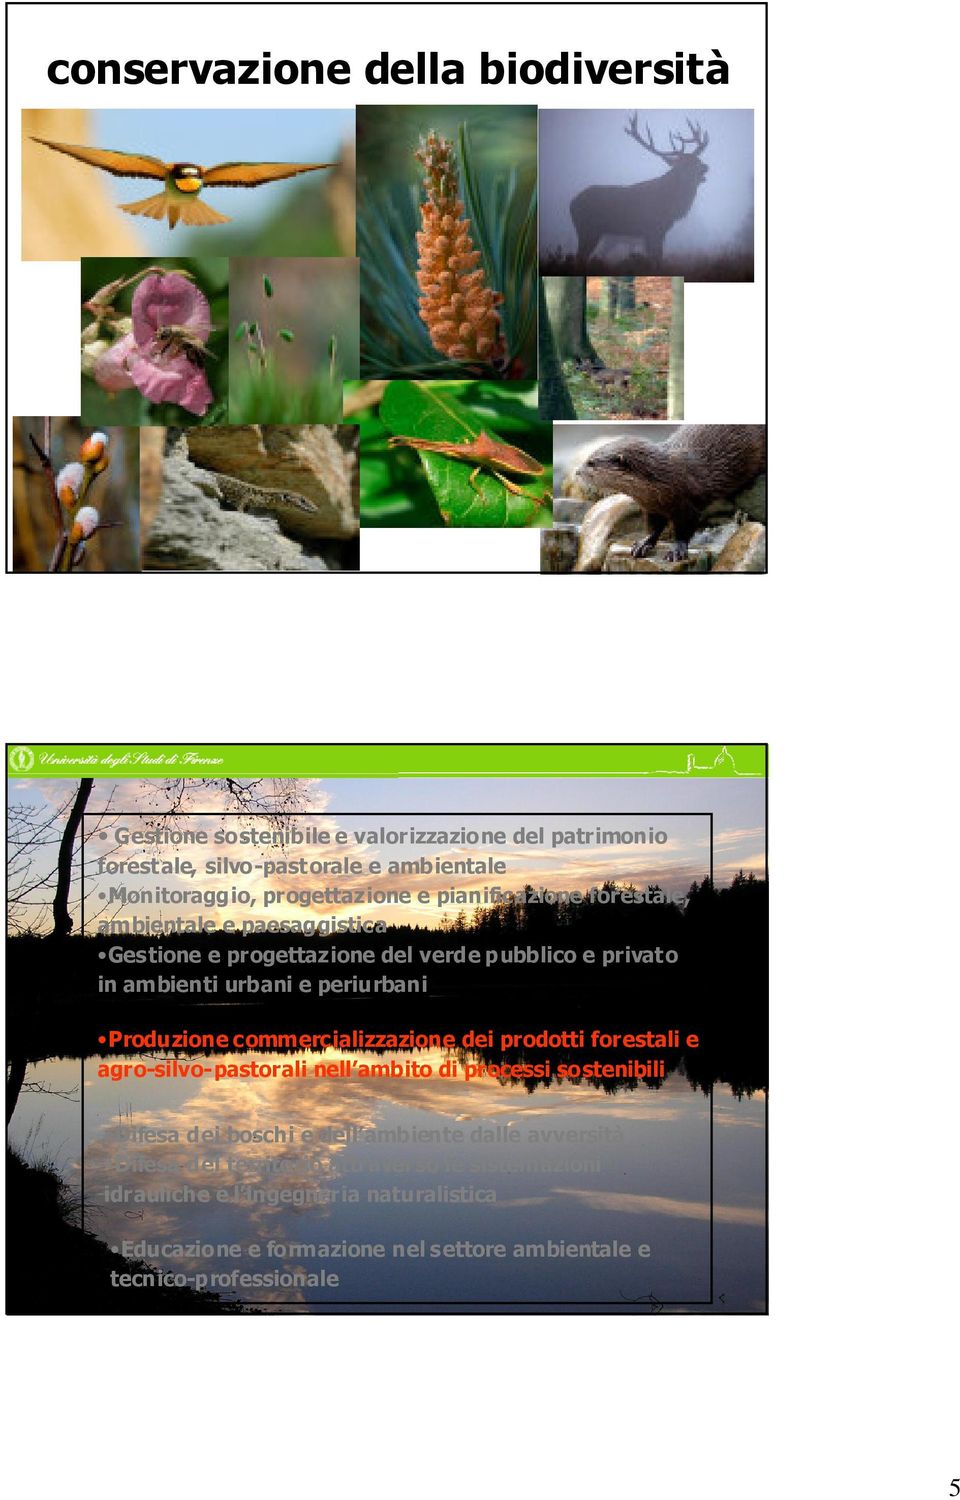 commercializzazione dei prodotti forestali e agro-silvo-pastorali nell ambito di processi sostenibili Difesa dei boschi e dell ambiente dalle avversità